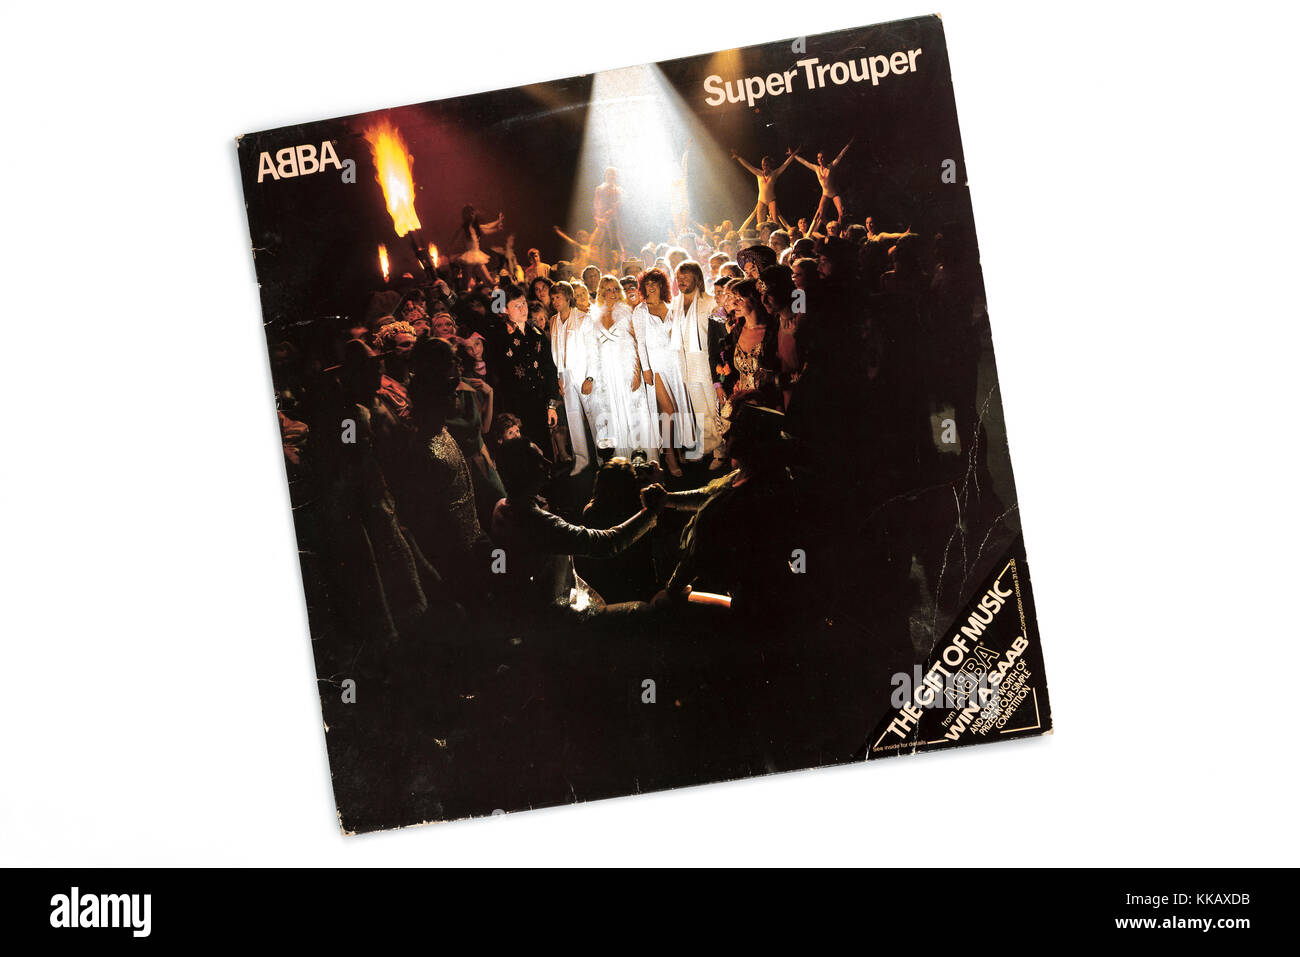 Abba Super Trouper, Album cover 1980. Stock Photo